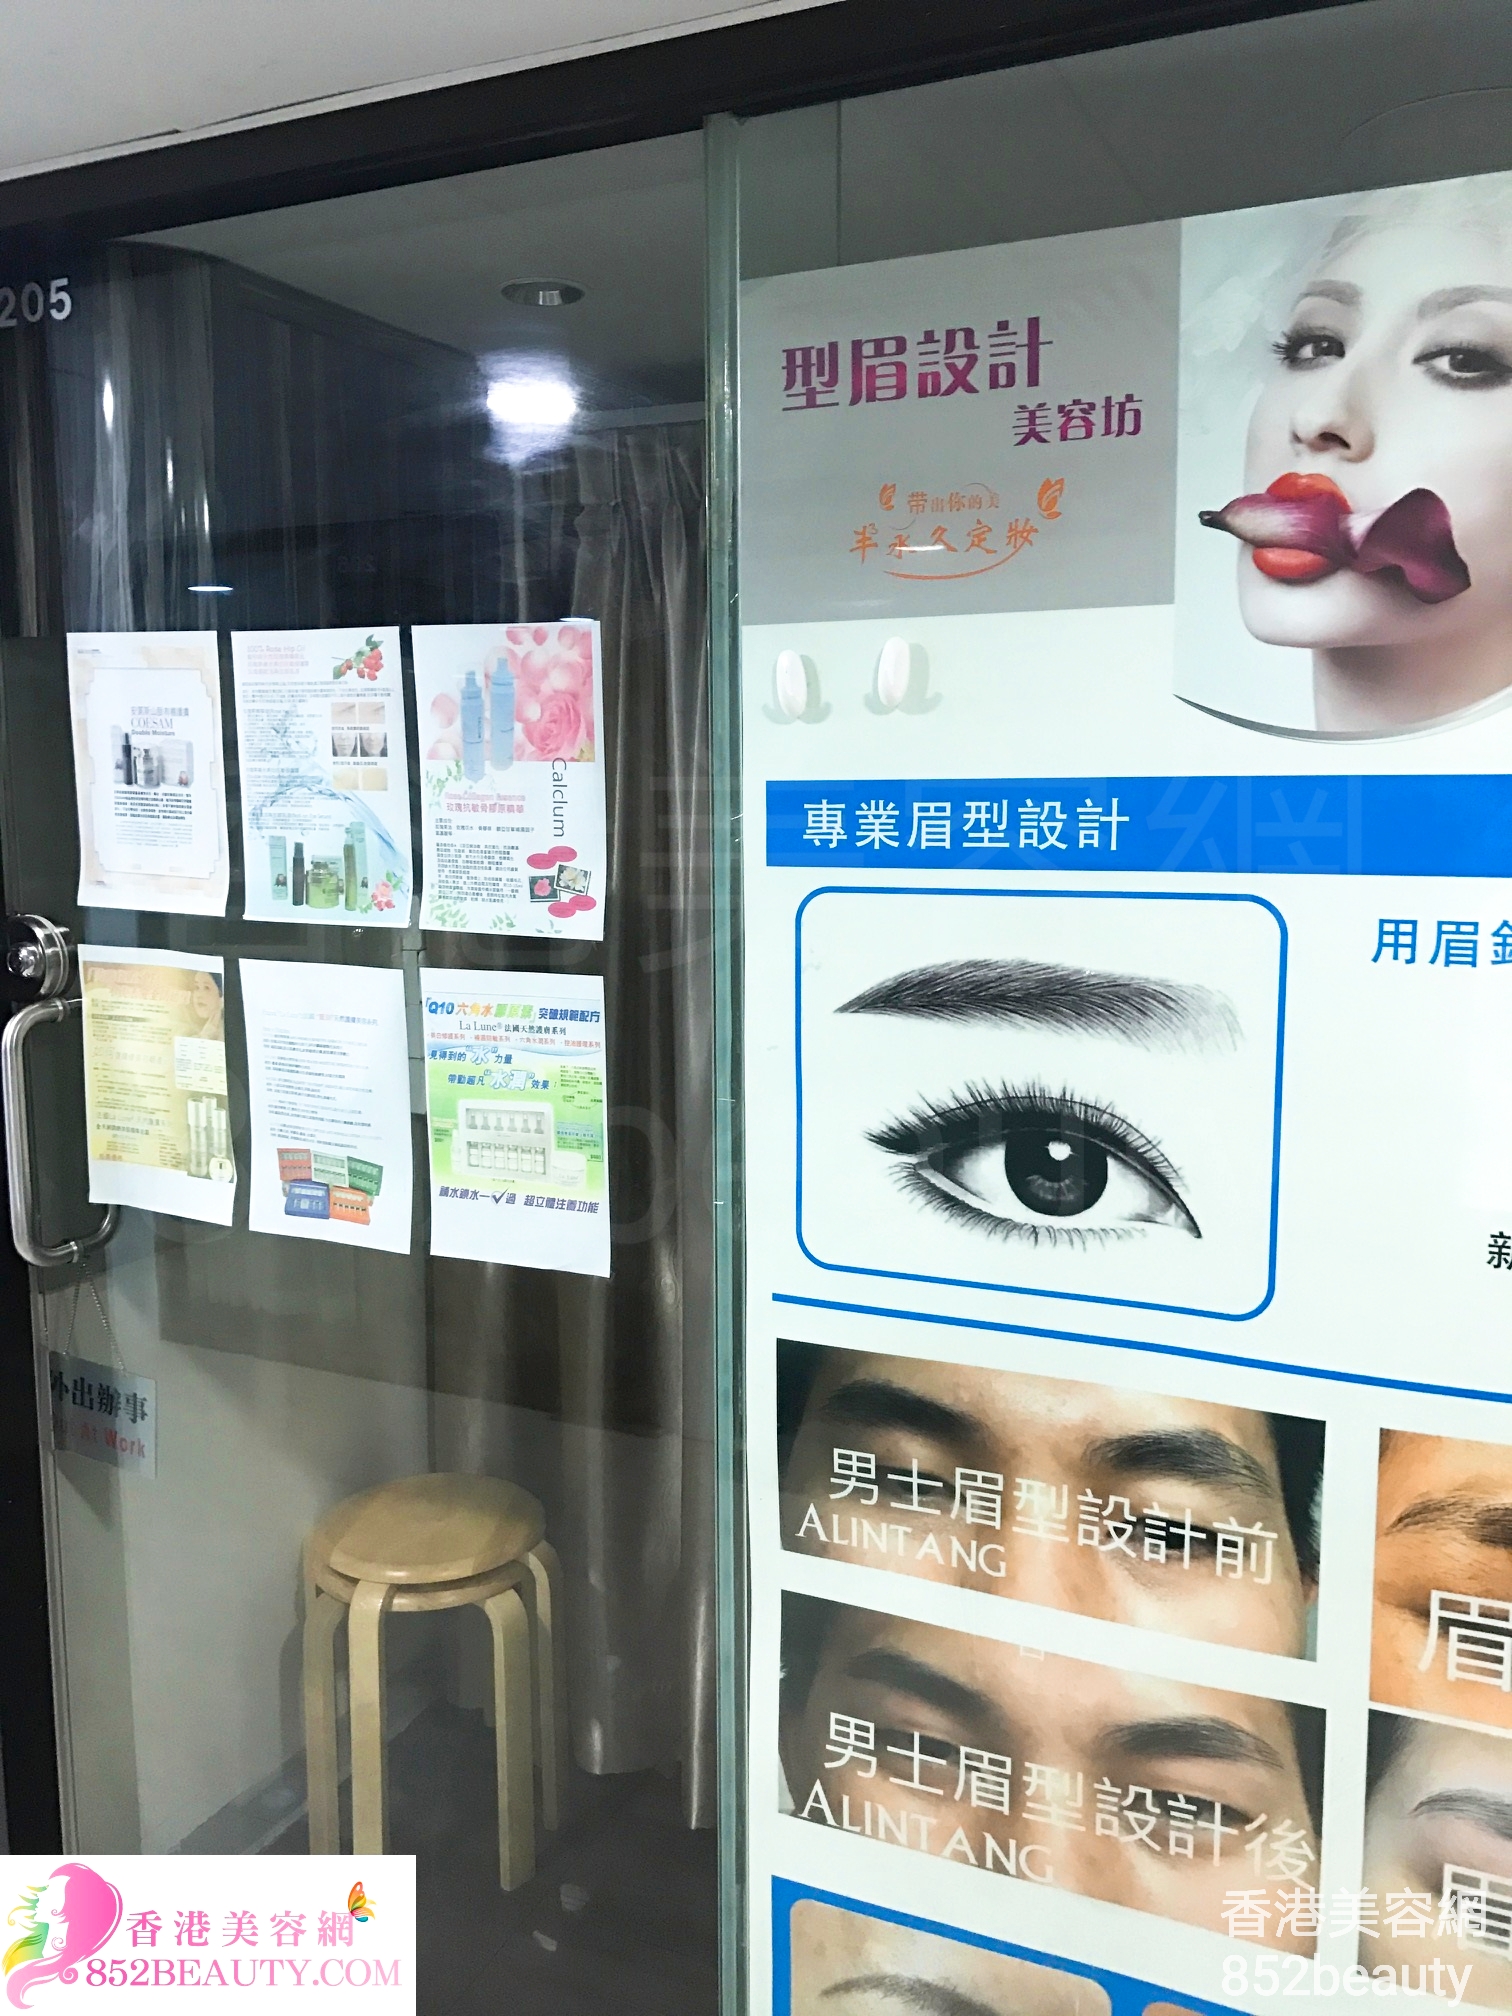 香港美容網 Hong Kong Beauty Salon 美容院 / 美容師: 型眉設計 美容坊